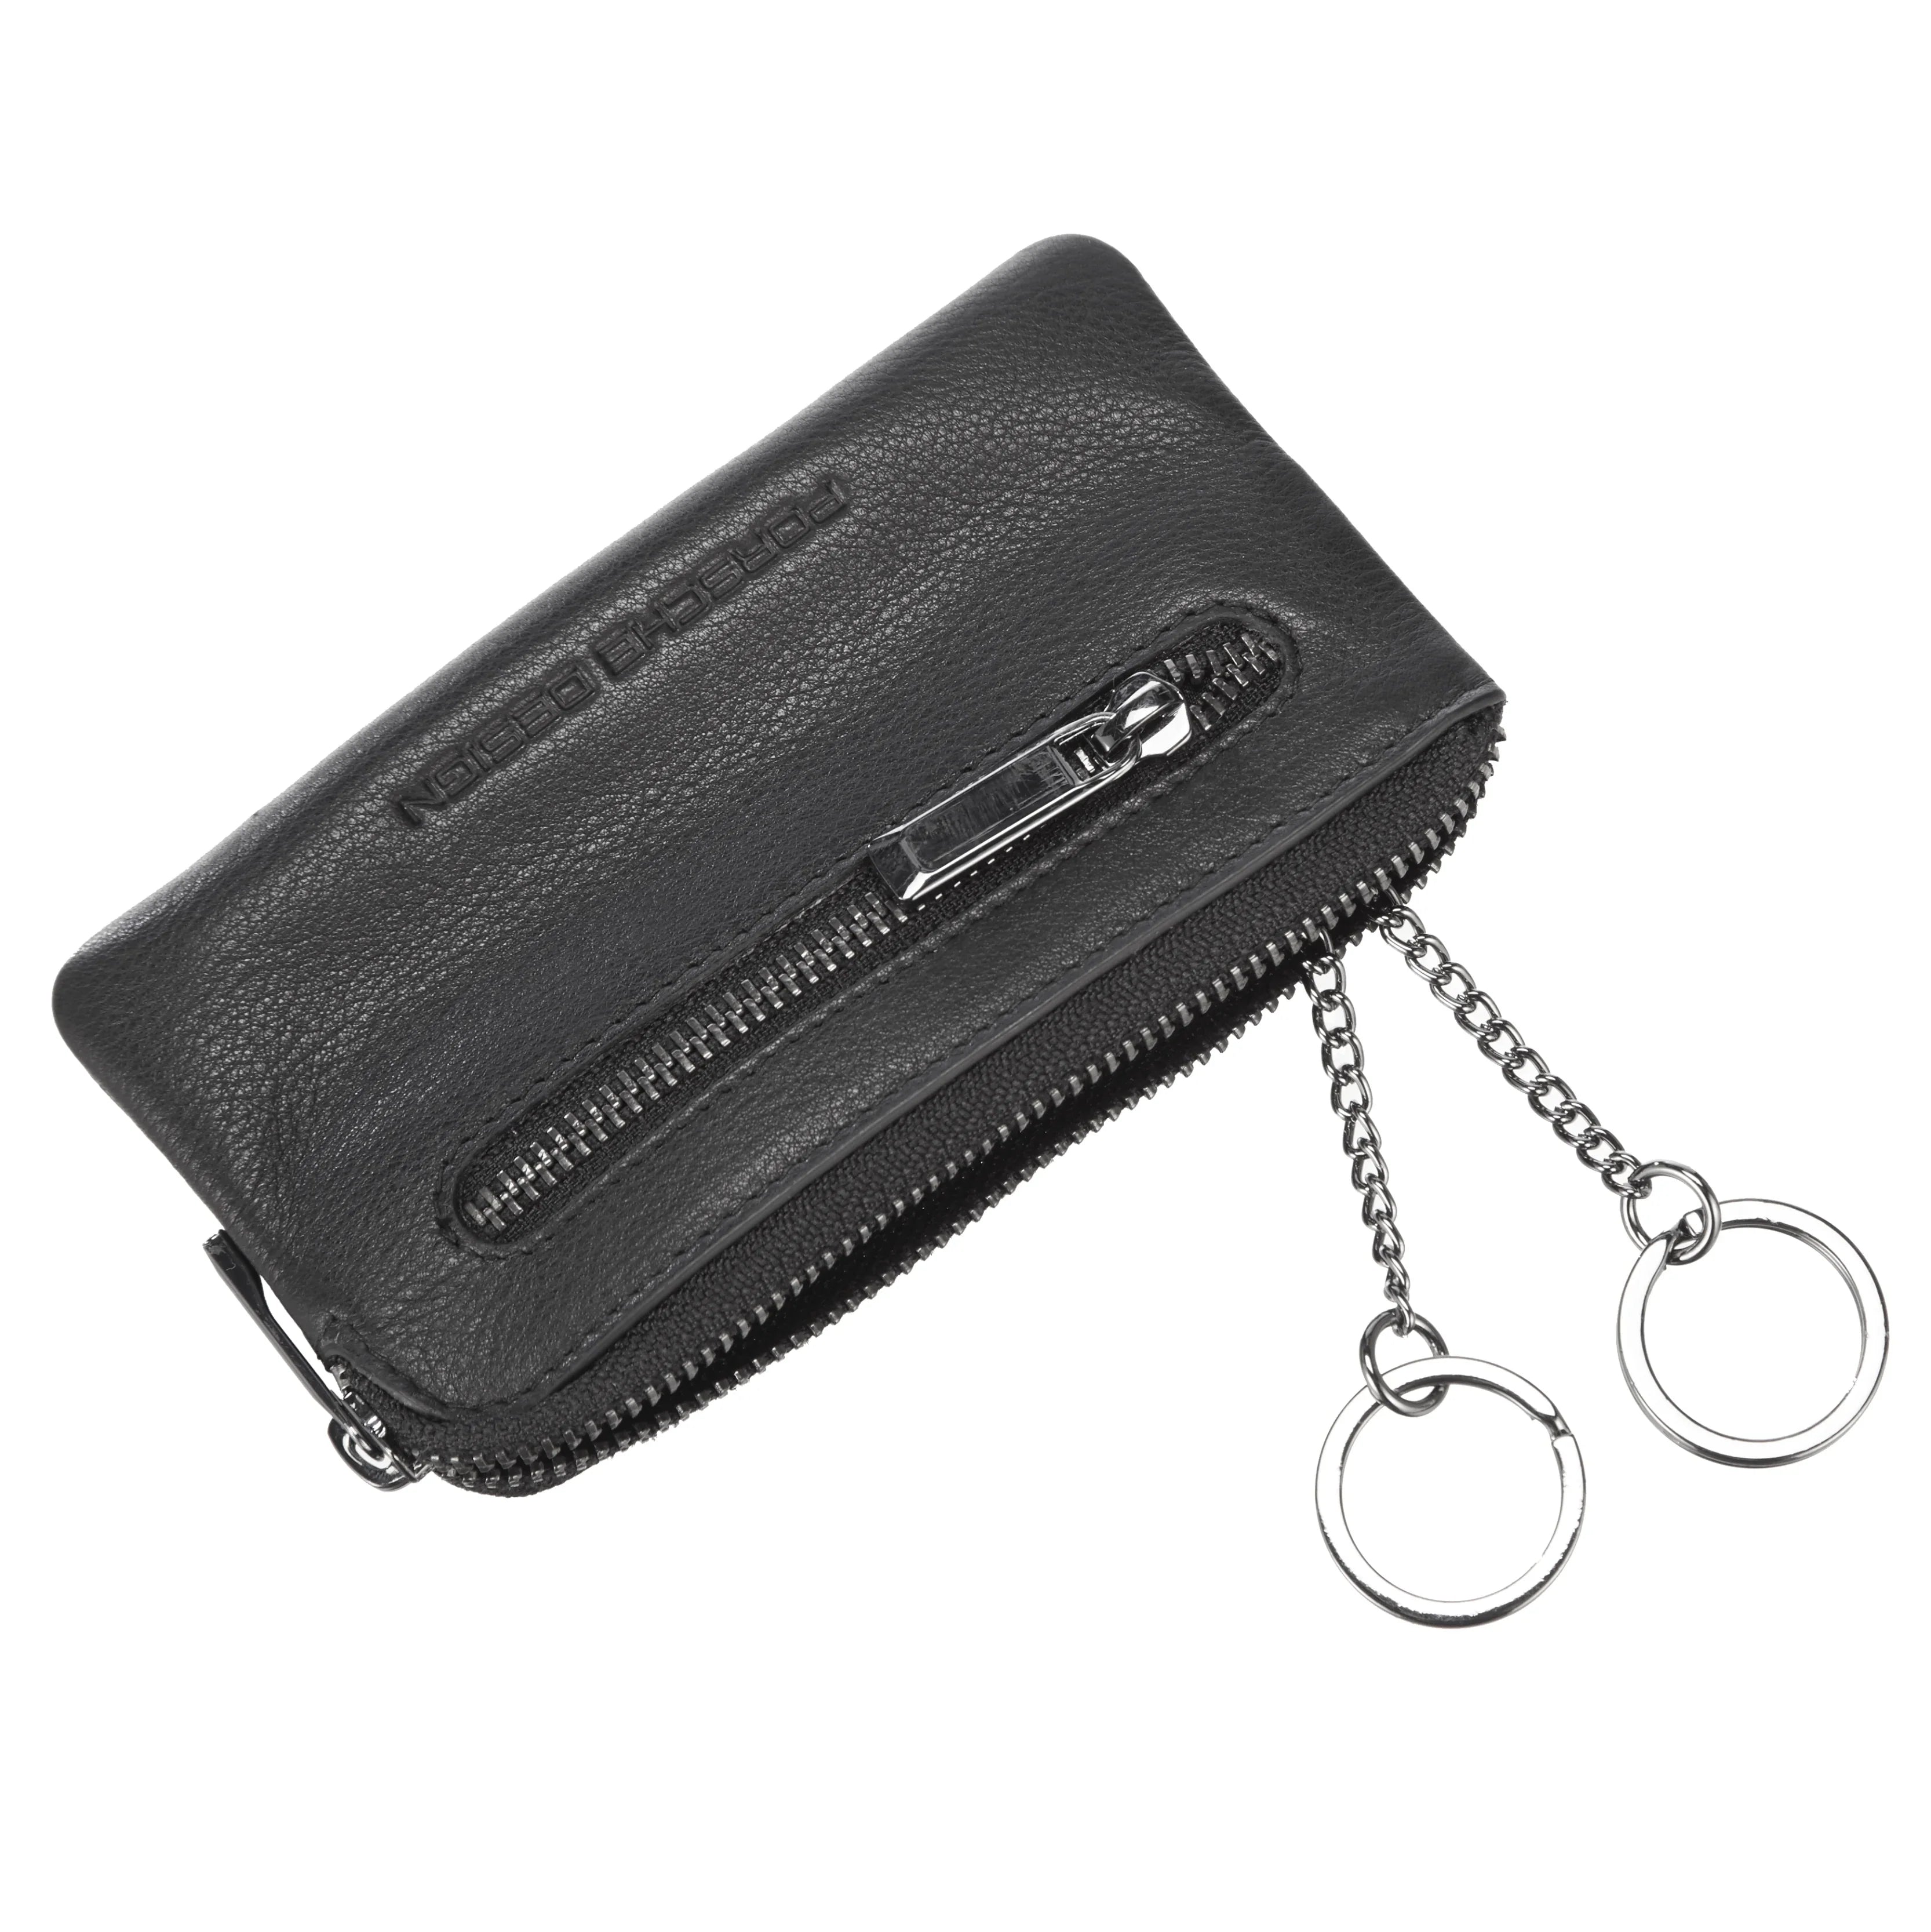 Porsche Design Accessories Business Key Case M 12 cm - Black